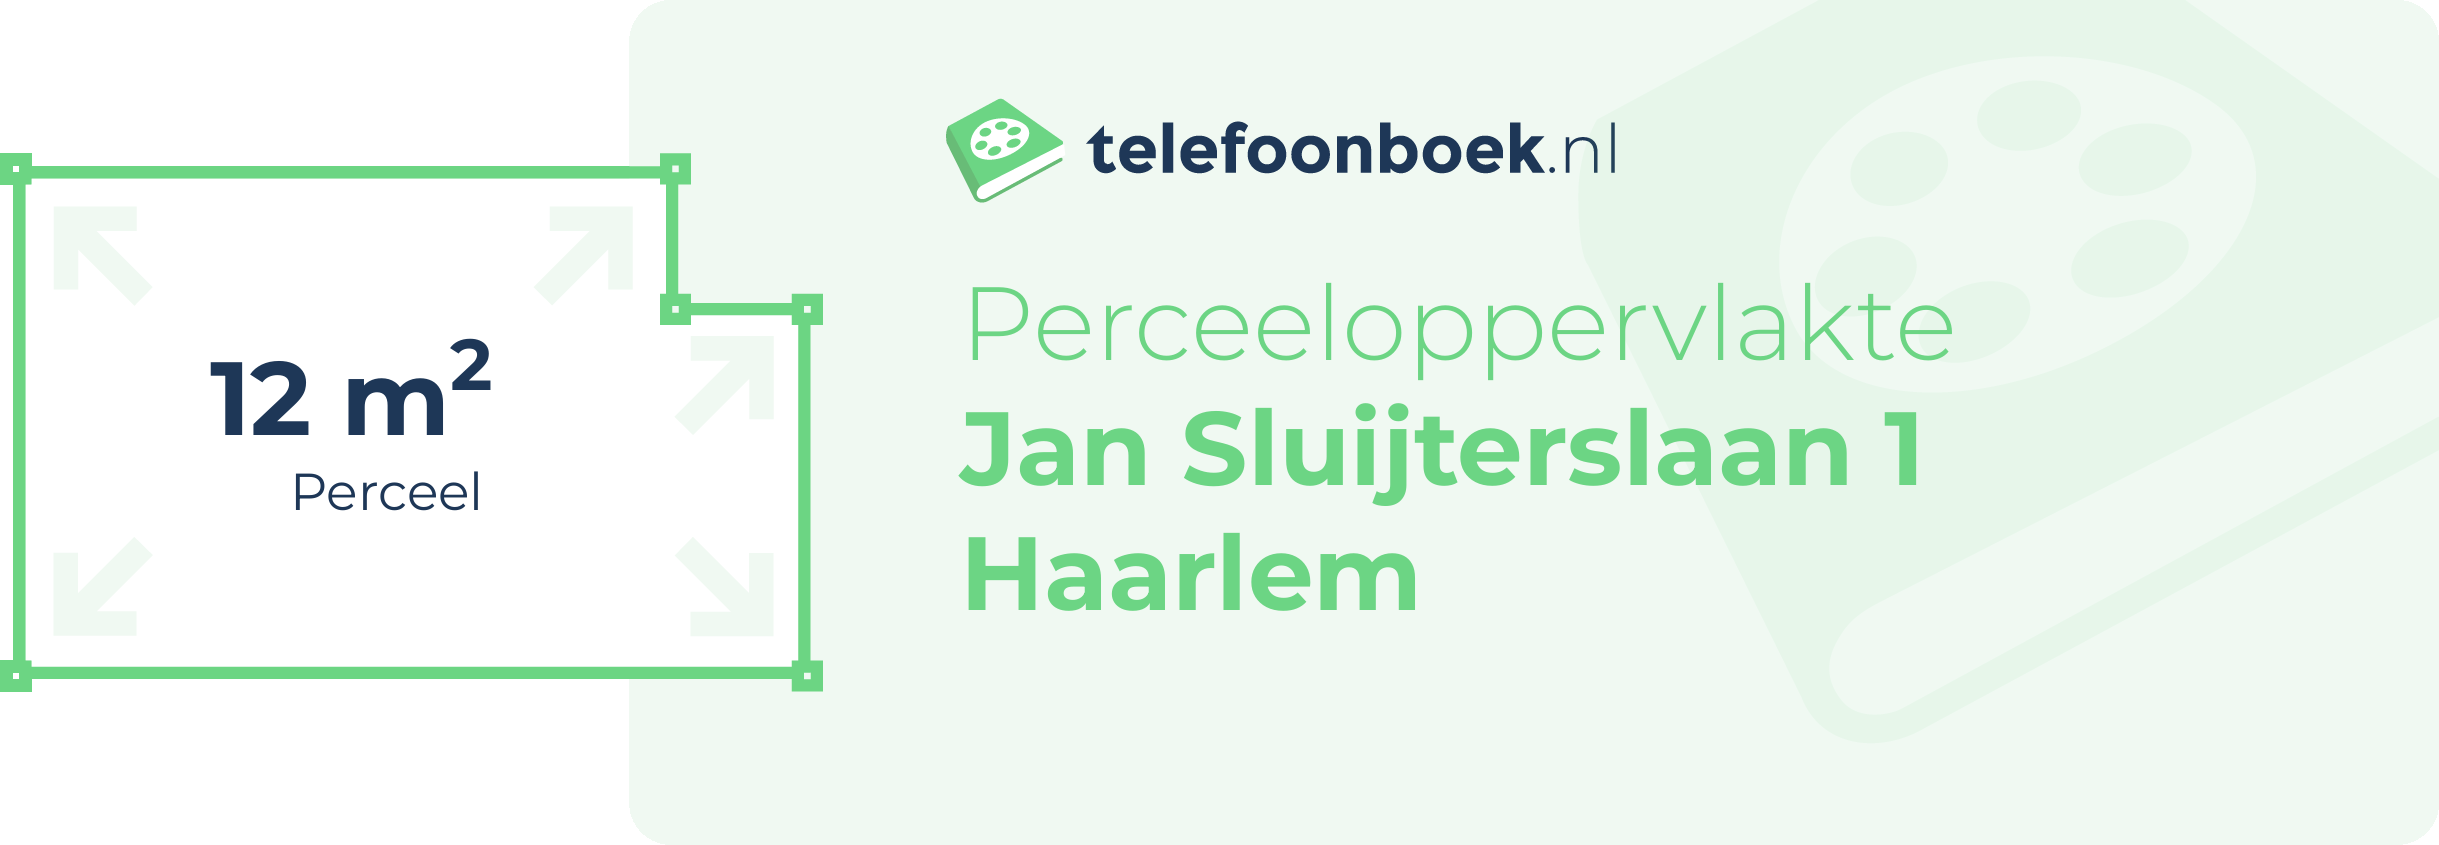 Perceeloppervlakte Jan Sluijterslaan 1 Haarlem